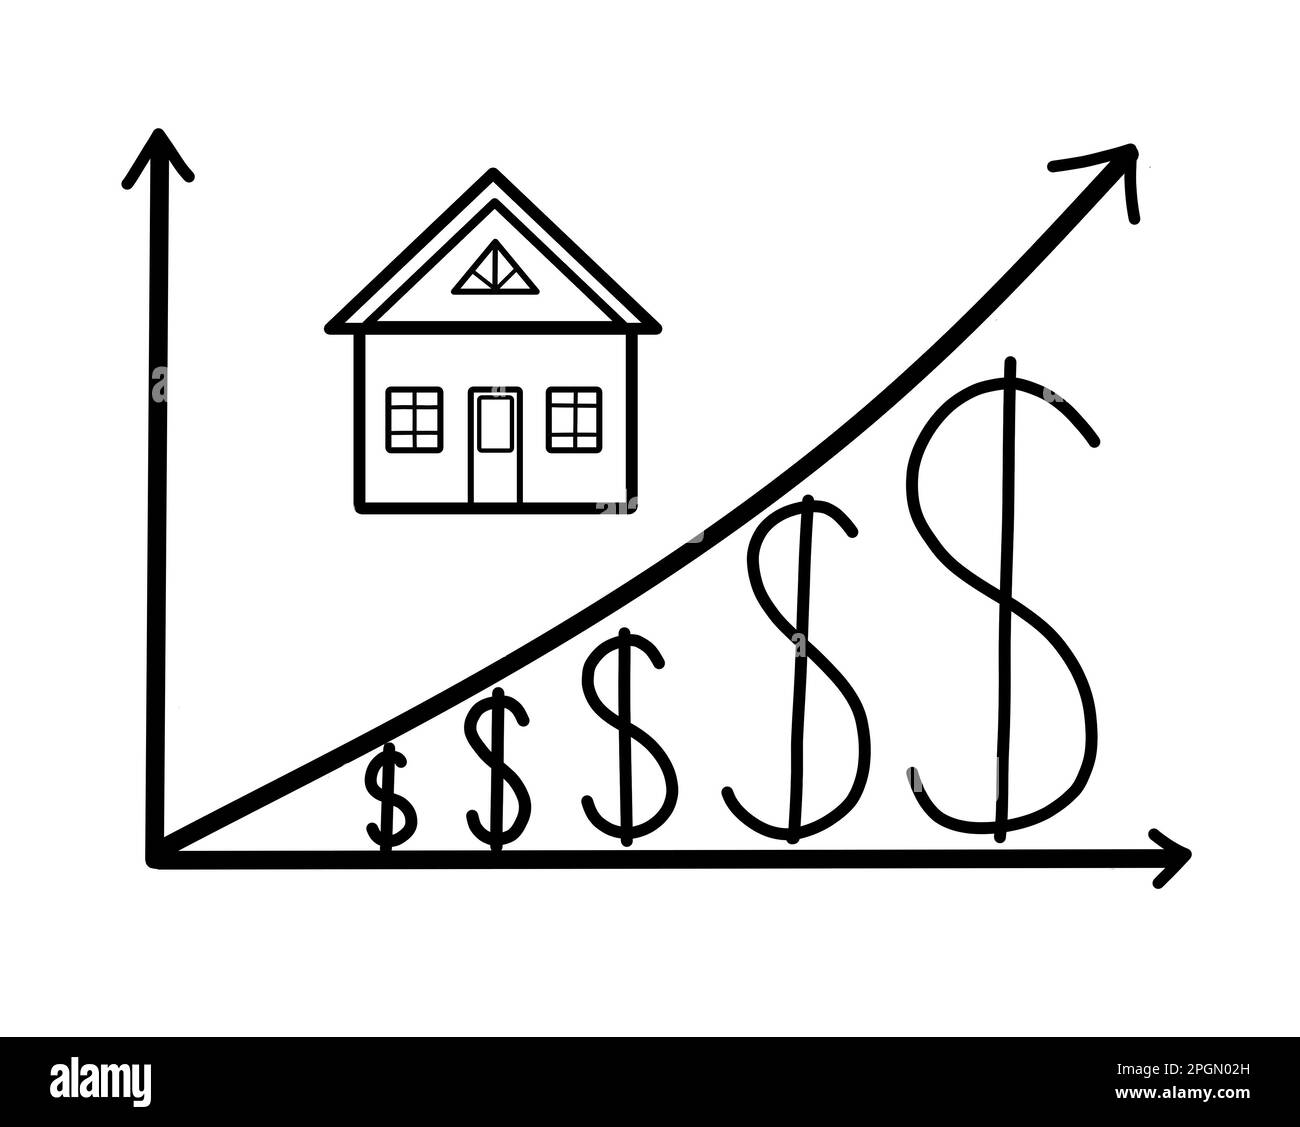 Une propriété avec un graphique du prix du marché en dollars américains. Le concept de croissance économique et de l'entreprise de logement. Illustration noir et blanc. Banque D'Images